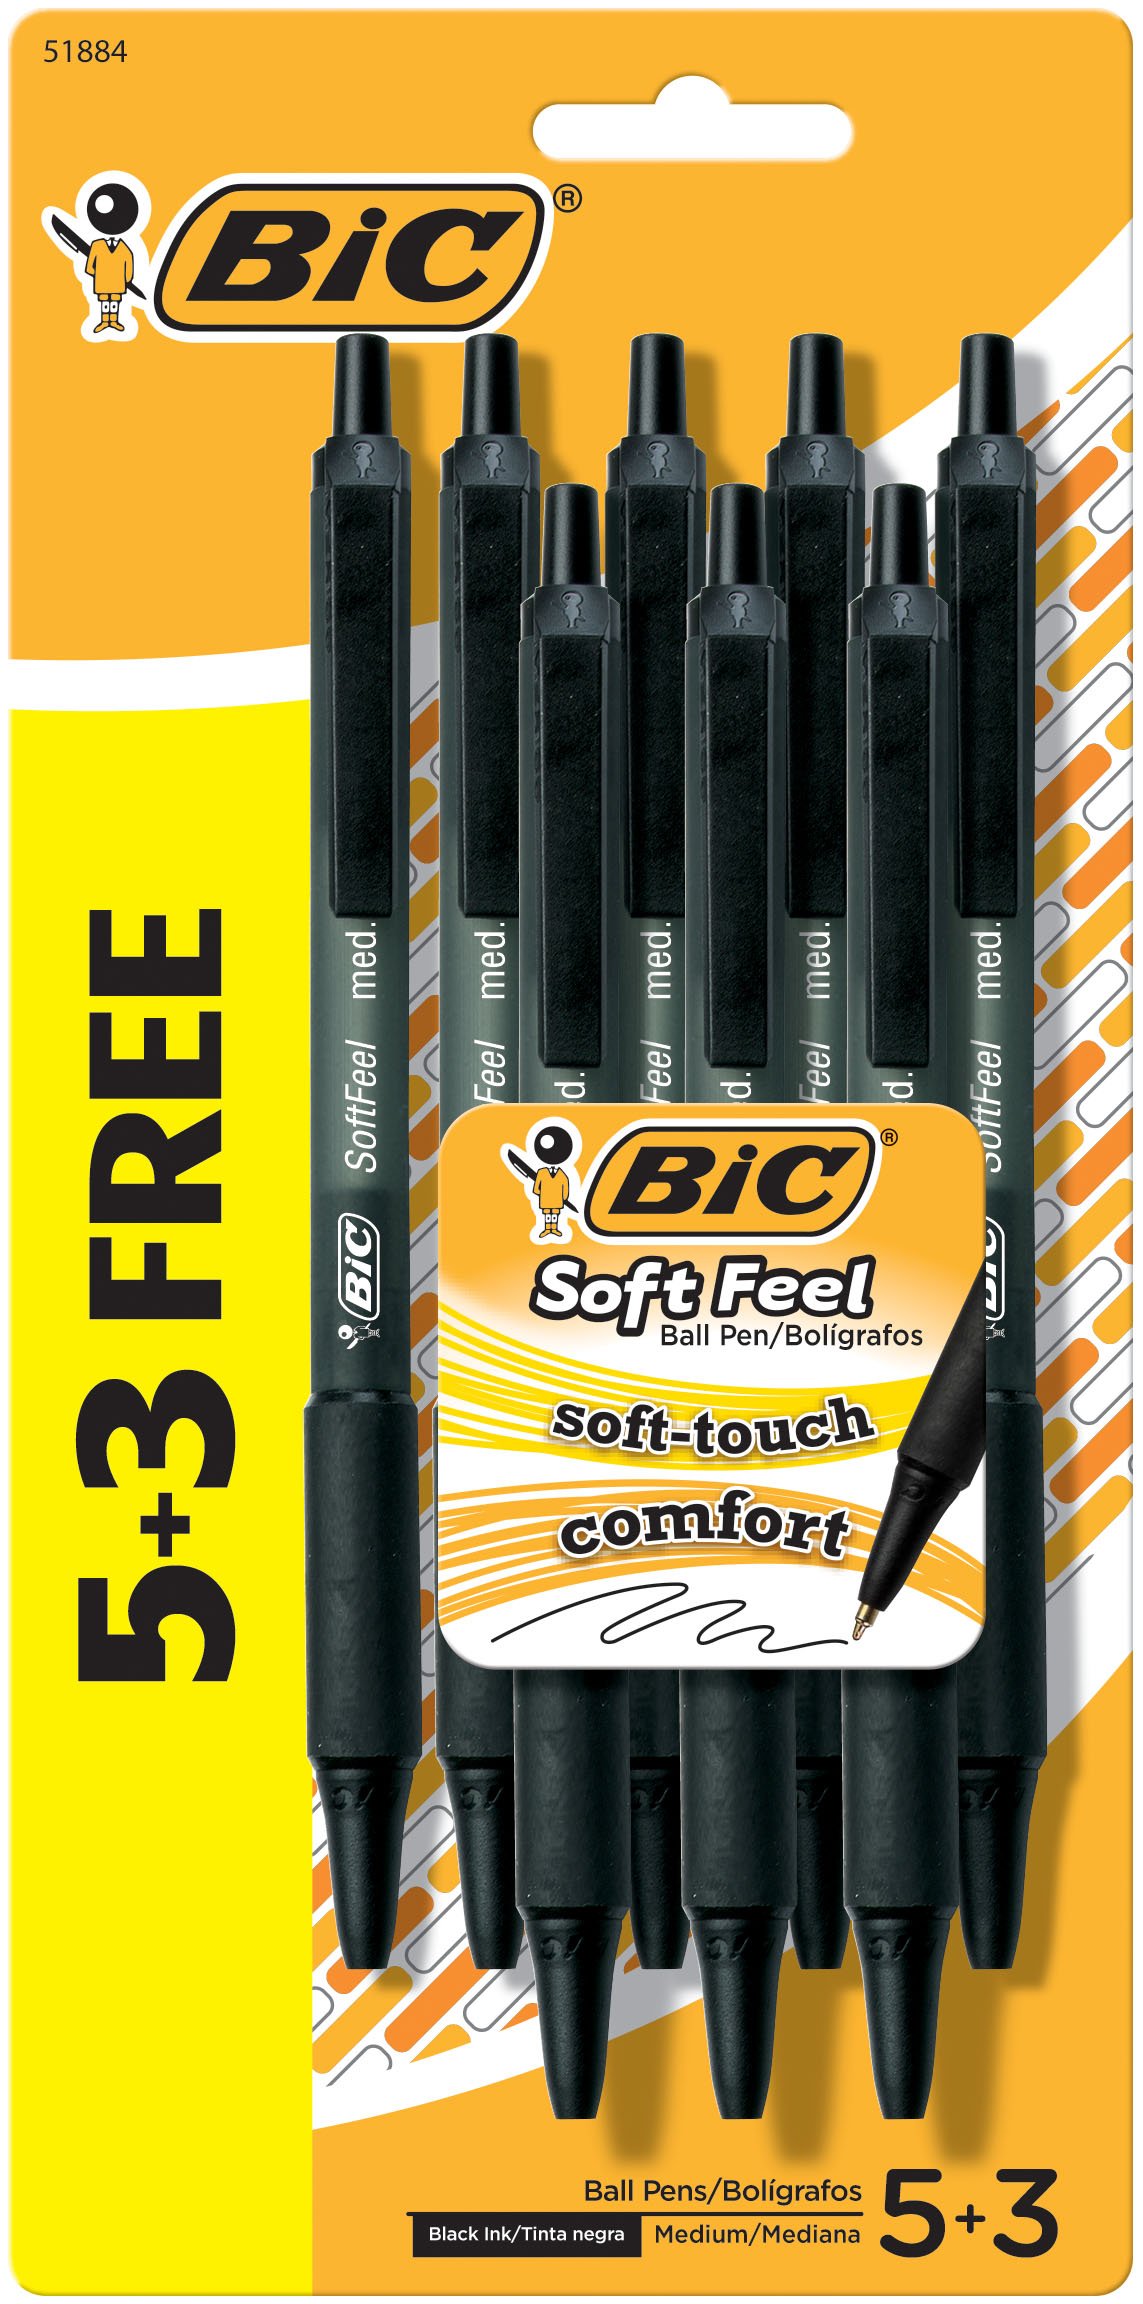 Bic Soft Feel Ballpoint Pens Bonus 5 Plus 3 - Shop Pens at H-E-B